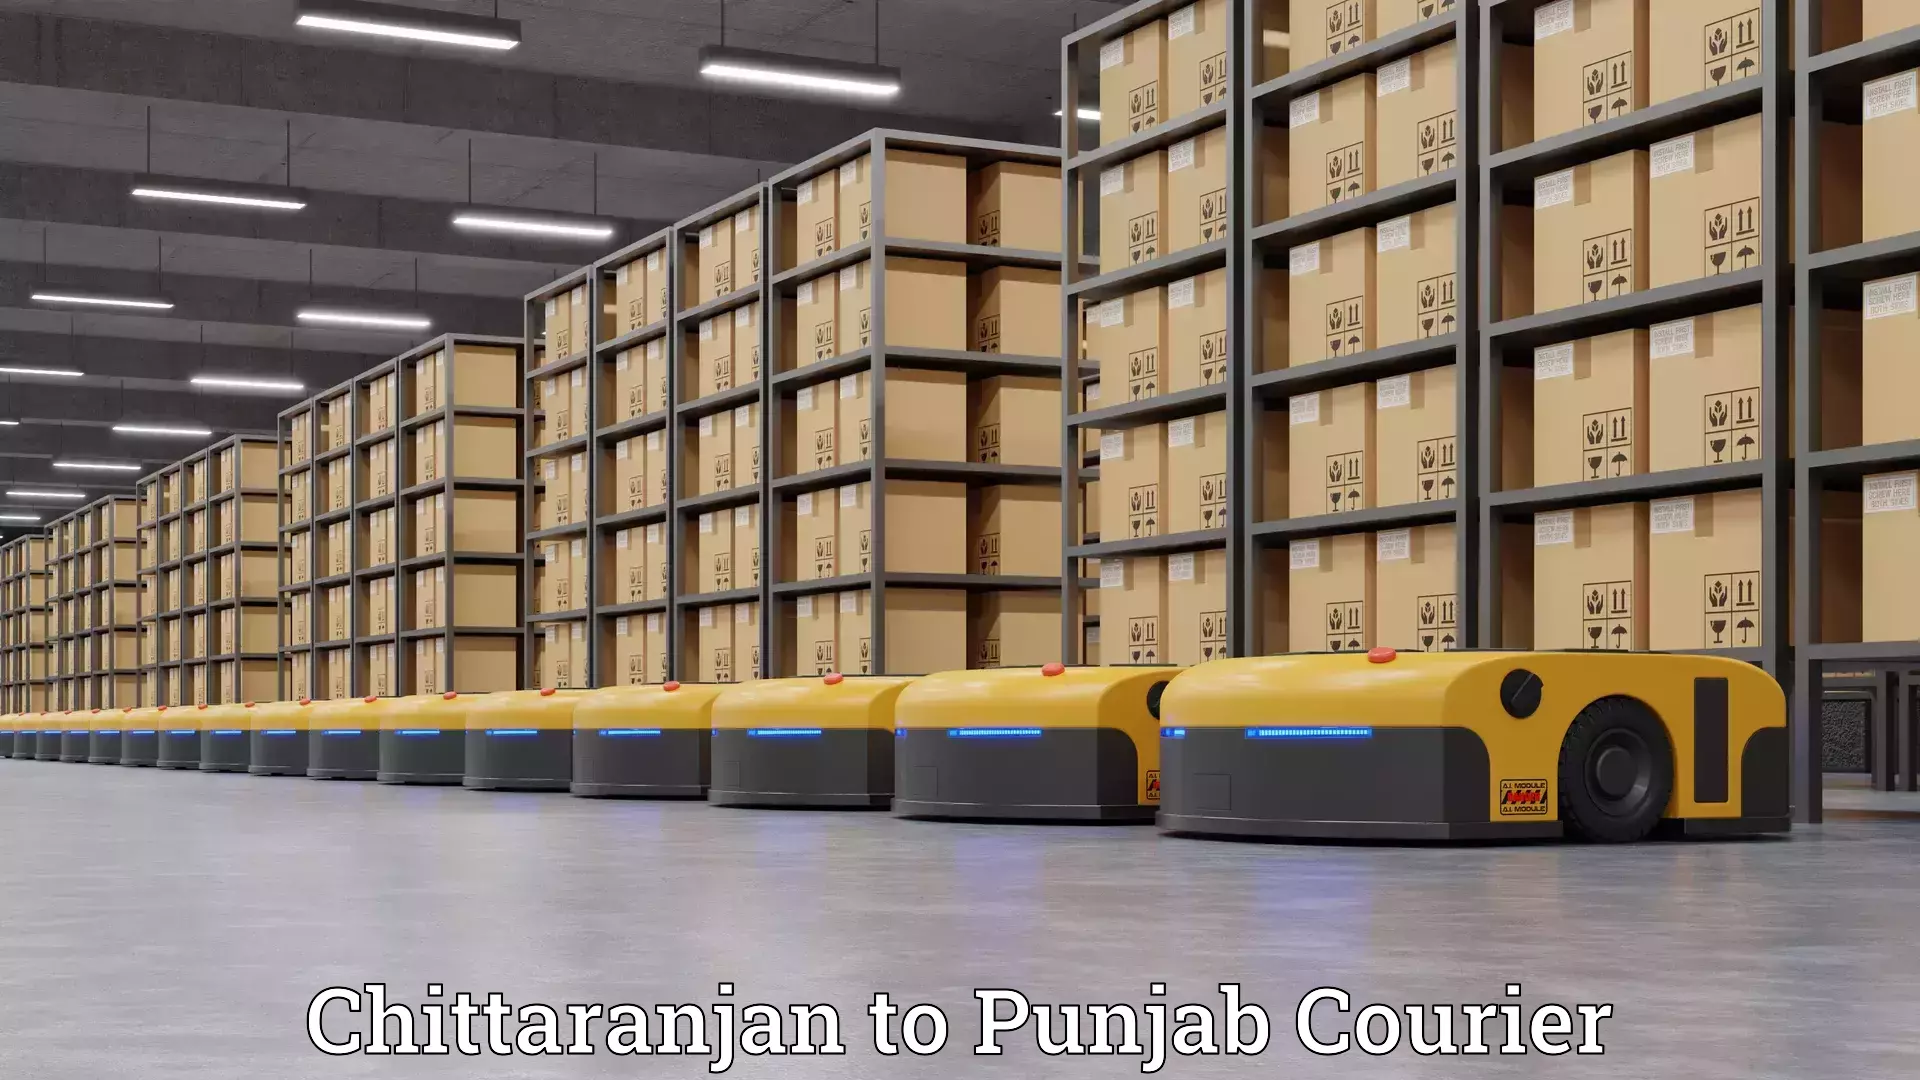 Quality furniture relocation Chittaranjan to Punjab